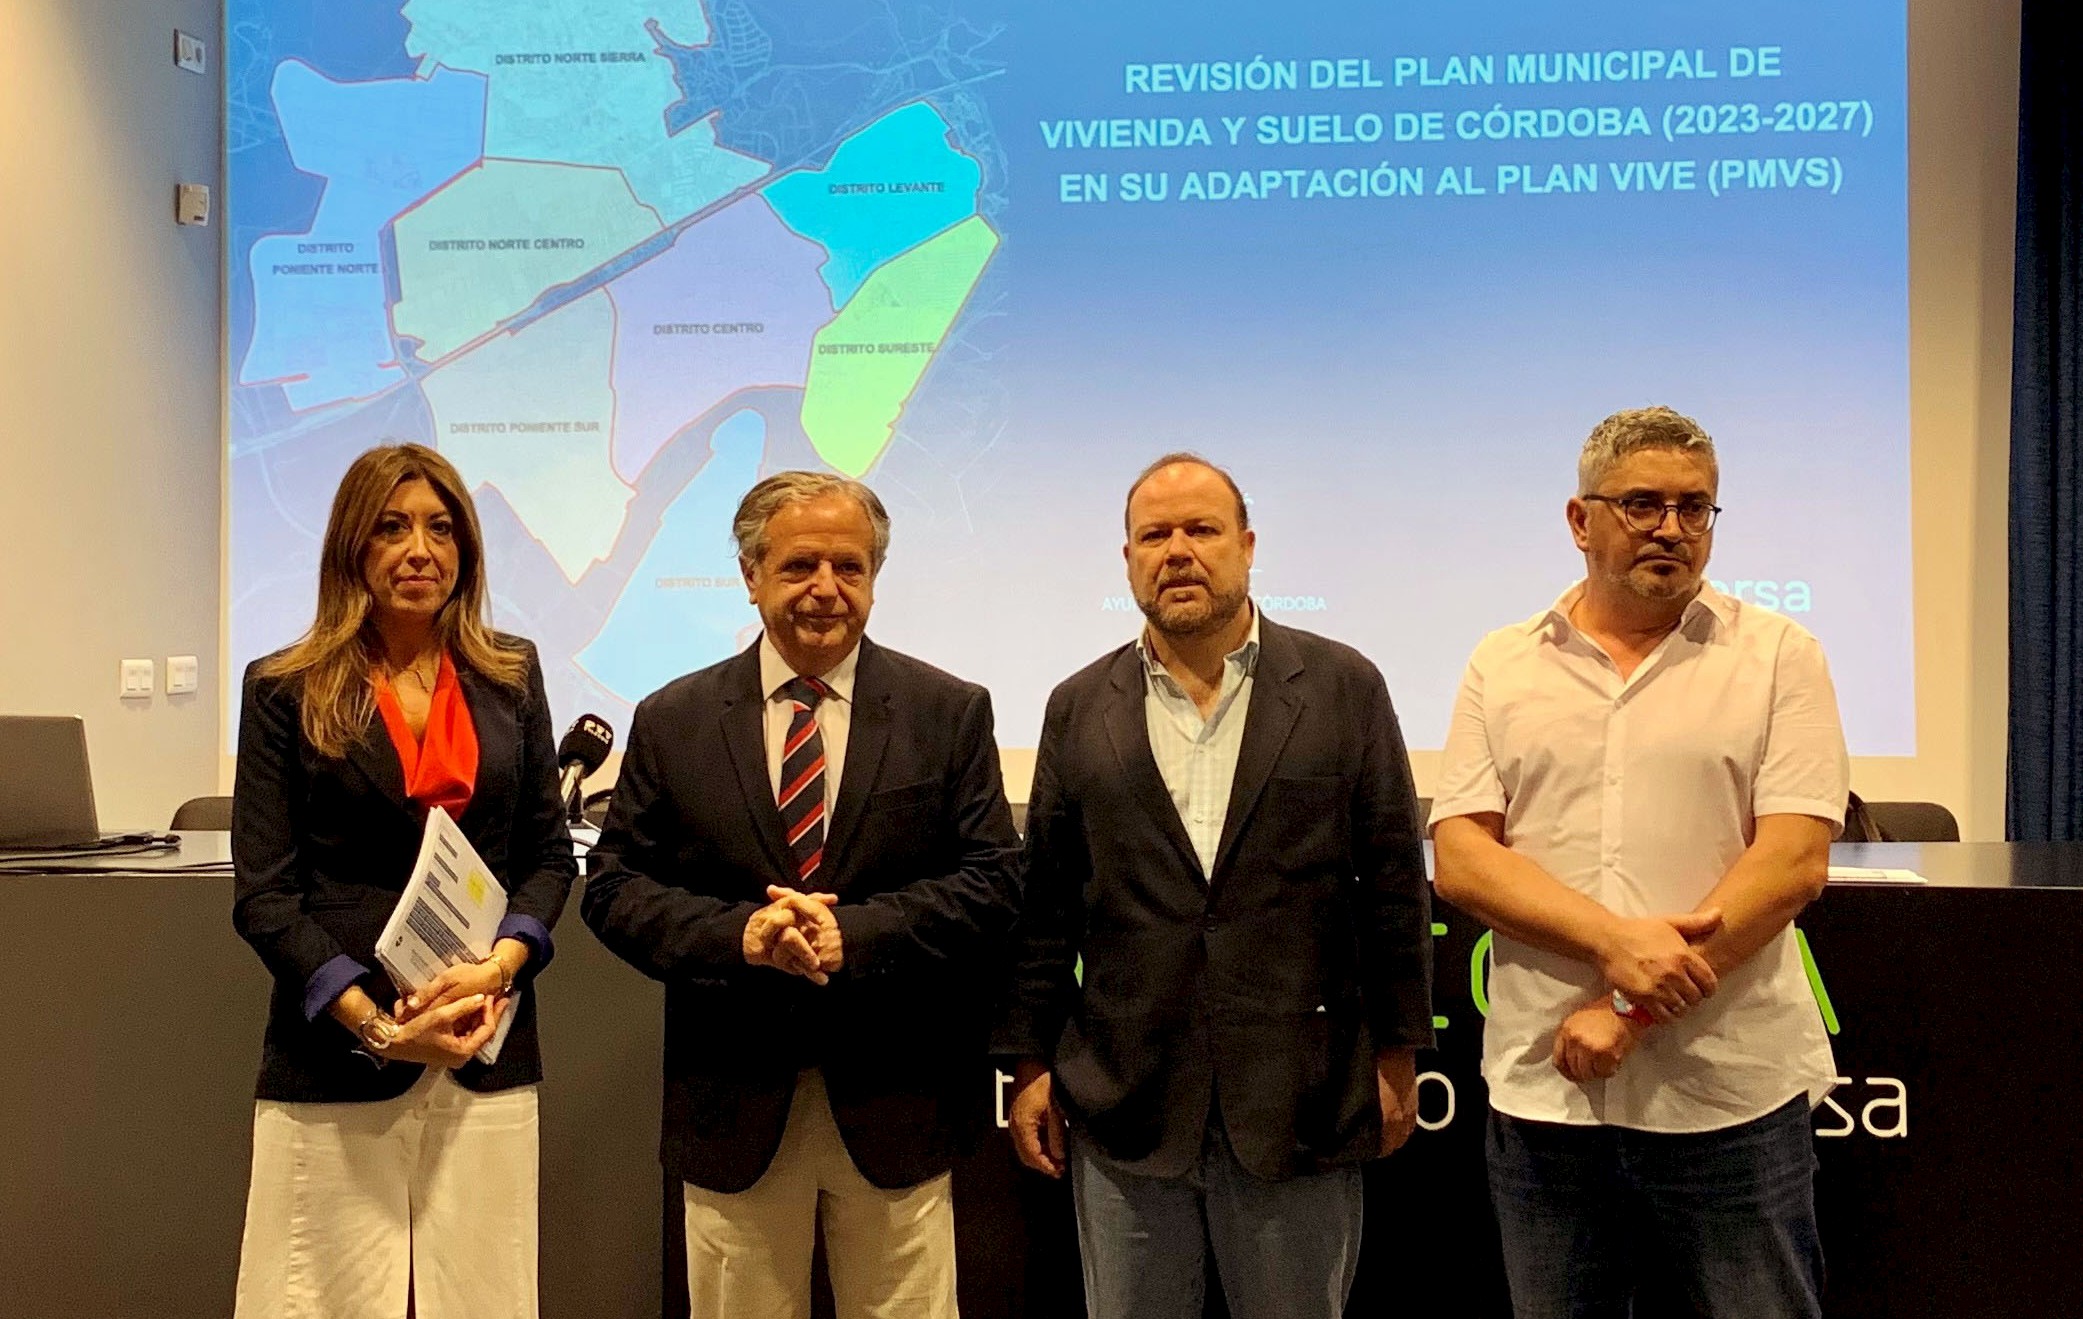 Vimcorsa presenta la Revisión del Plan Municipal de Vivienda y Suelo de Córdoba (2023-2027)